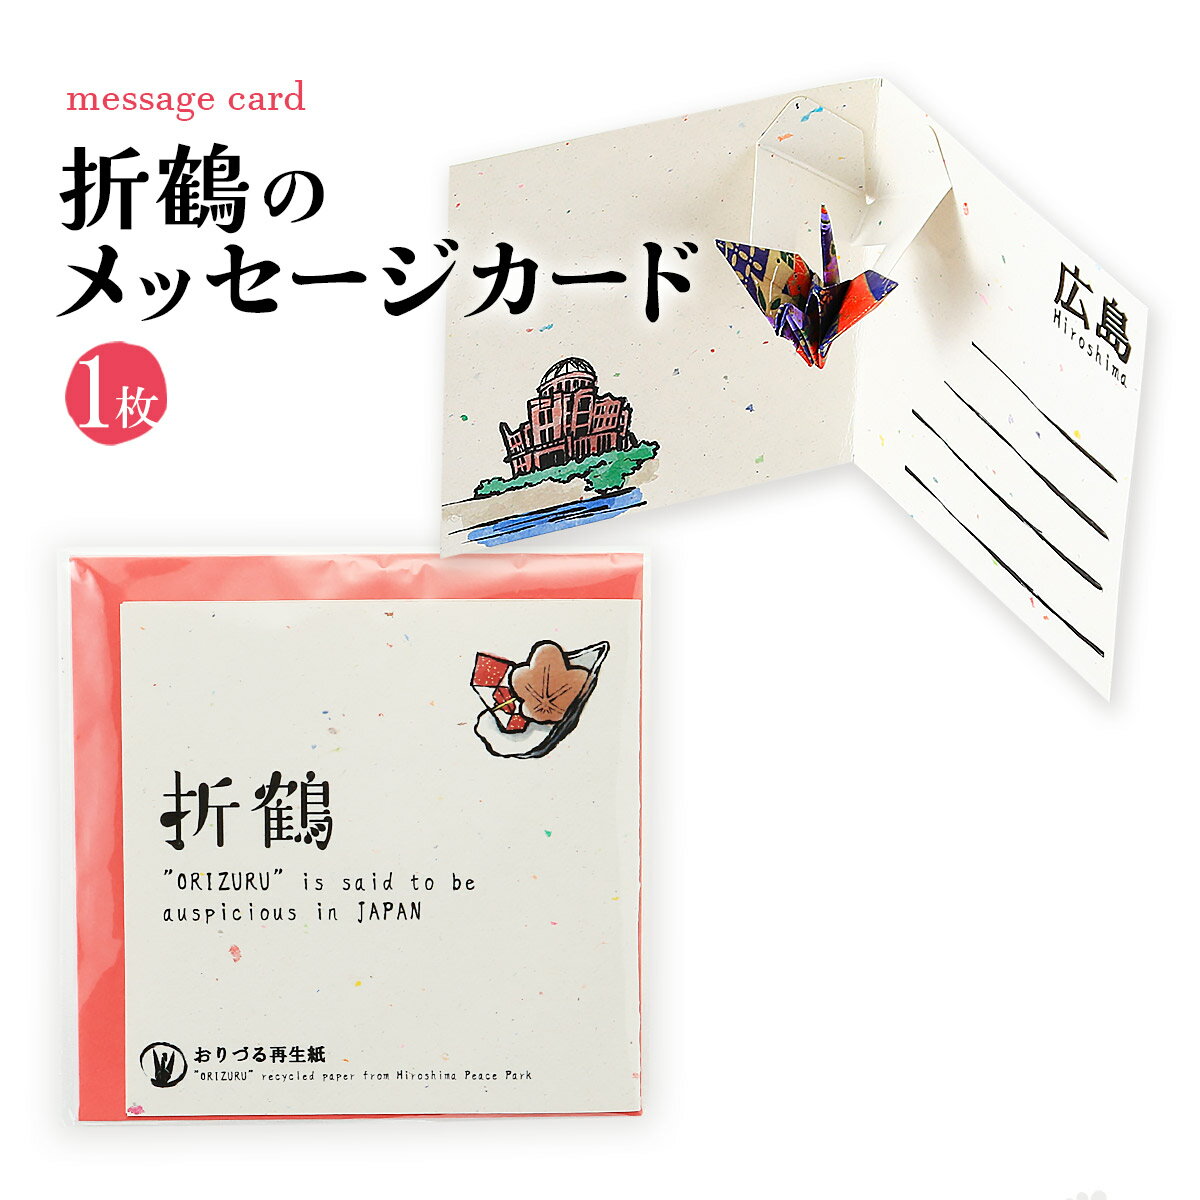 【商品特徴】広島平和記念公園の「原爆の子の像」へ世界中から捧げられた折り鶴を再生した折鶴再生紙を使用したメッセージカードと、友禅の千代紙で折られた折り鶴をセットにした折り鶴ポップアップカードです。 年間約1千万羽寄せられる折鶴を製品として再利用することで、資源を無駄にしないだけでなく、製品を通して多くの人に平和に対する強い想いを届けています。 平和と広島の思い出を伝えたい、大切なあの人にどうぞ。 ※友禅の折り紙の色は指定できません。 Created using recyled paper from the folder paper cranes in the Children's Peace Monument in Hiroshima's Peace Park, these message cards hope to share the prayers for peace with many people all over the world. Please use this to tell peace and memories of Hiroshima to loved ones. 商品説明県名 原材料 【カード】折鶴再生紙 【折り鶴】友禅紙 サイズ 115×6×113(mm) 原産国 日本 内容量 1枚 メーカー名 株式会社松田製袋広島県広島市中区舟入幸町21番2号